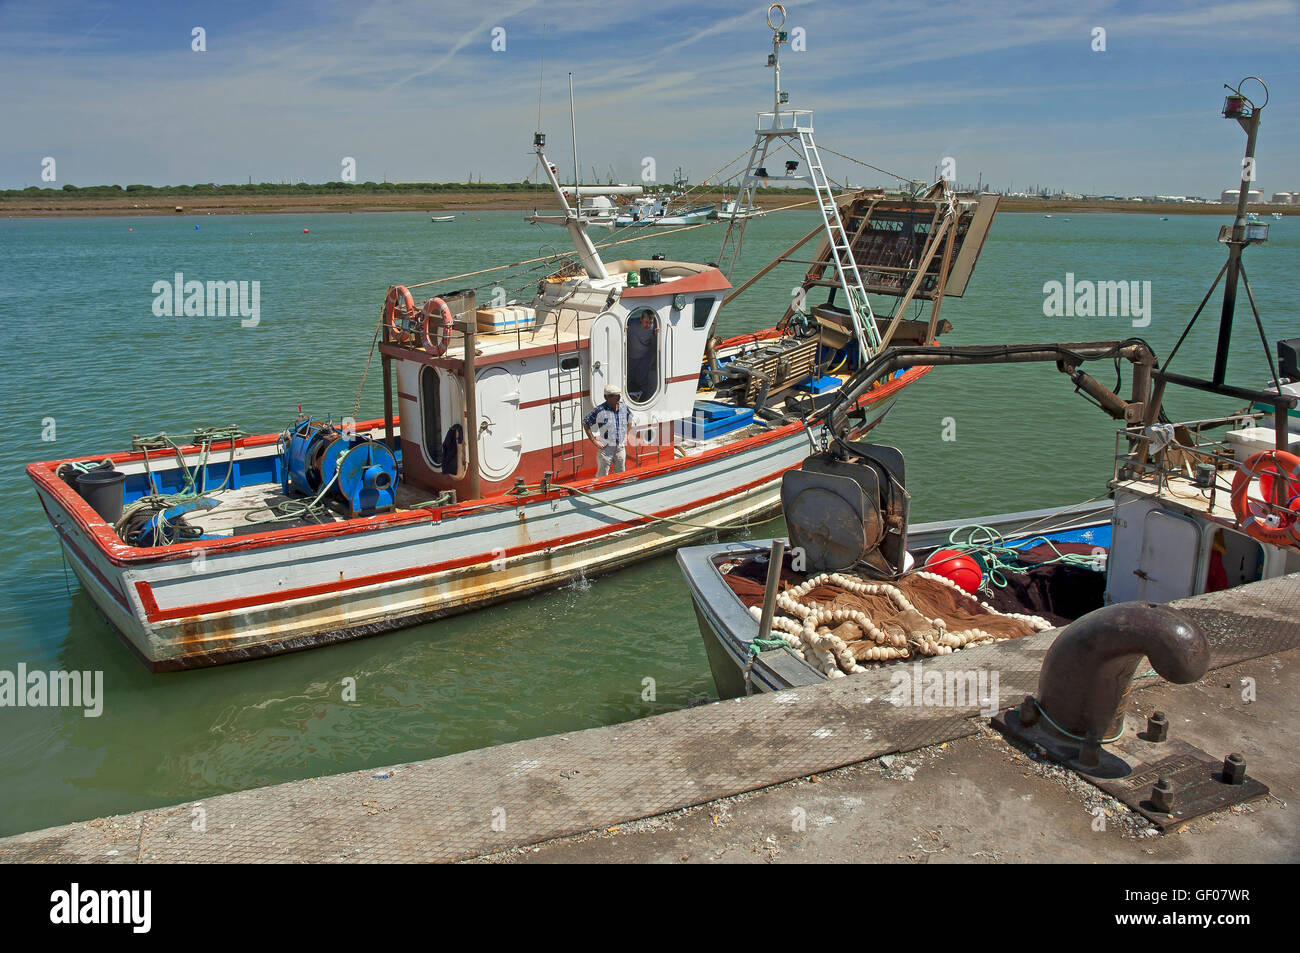 Port de pêche, Punta Umbría, Huelva province, région d'Andalousie, Espagne, Europe Banque D'Images